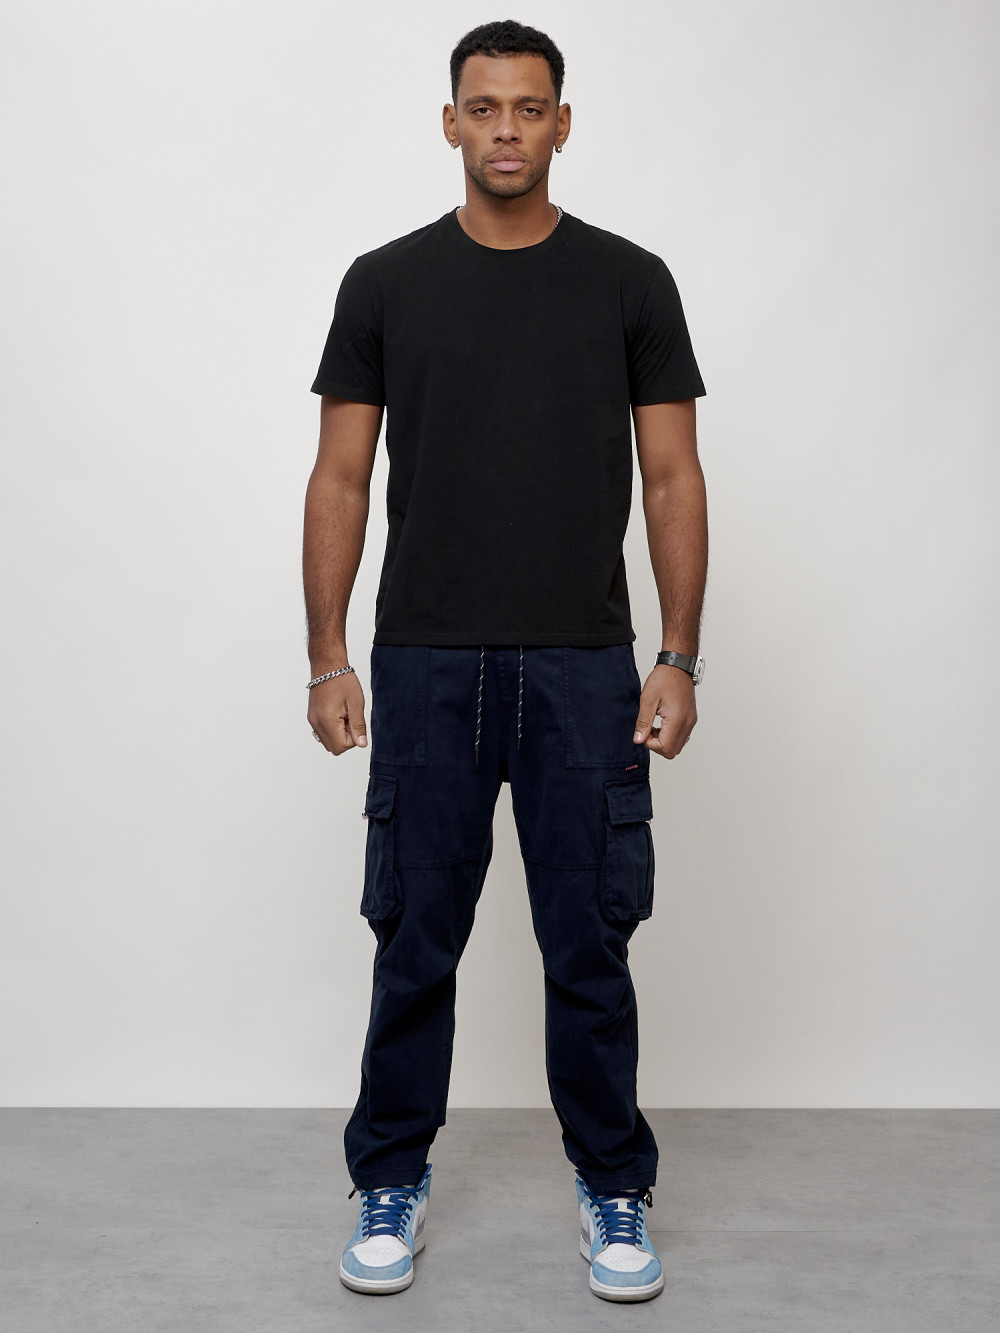 Джинсы карго мужские с накладными карманами темно-синего цвета 2421TS